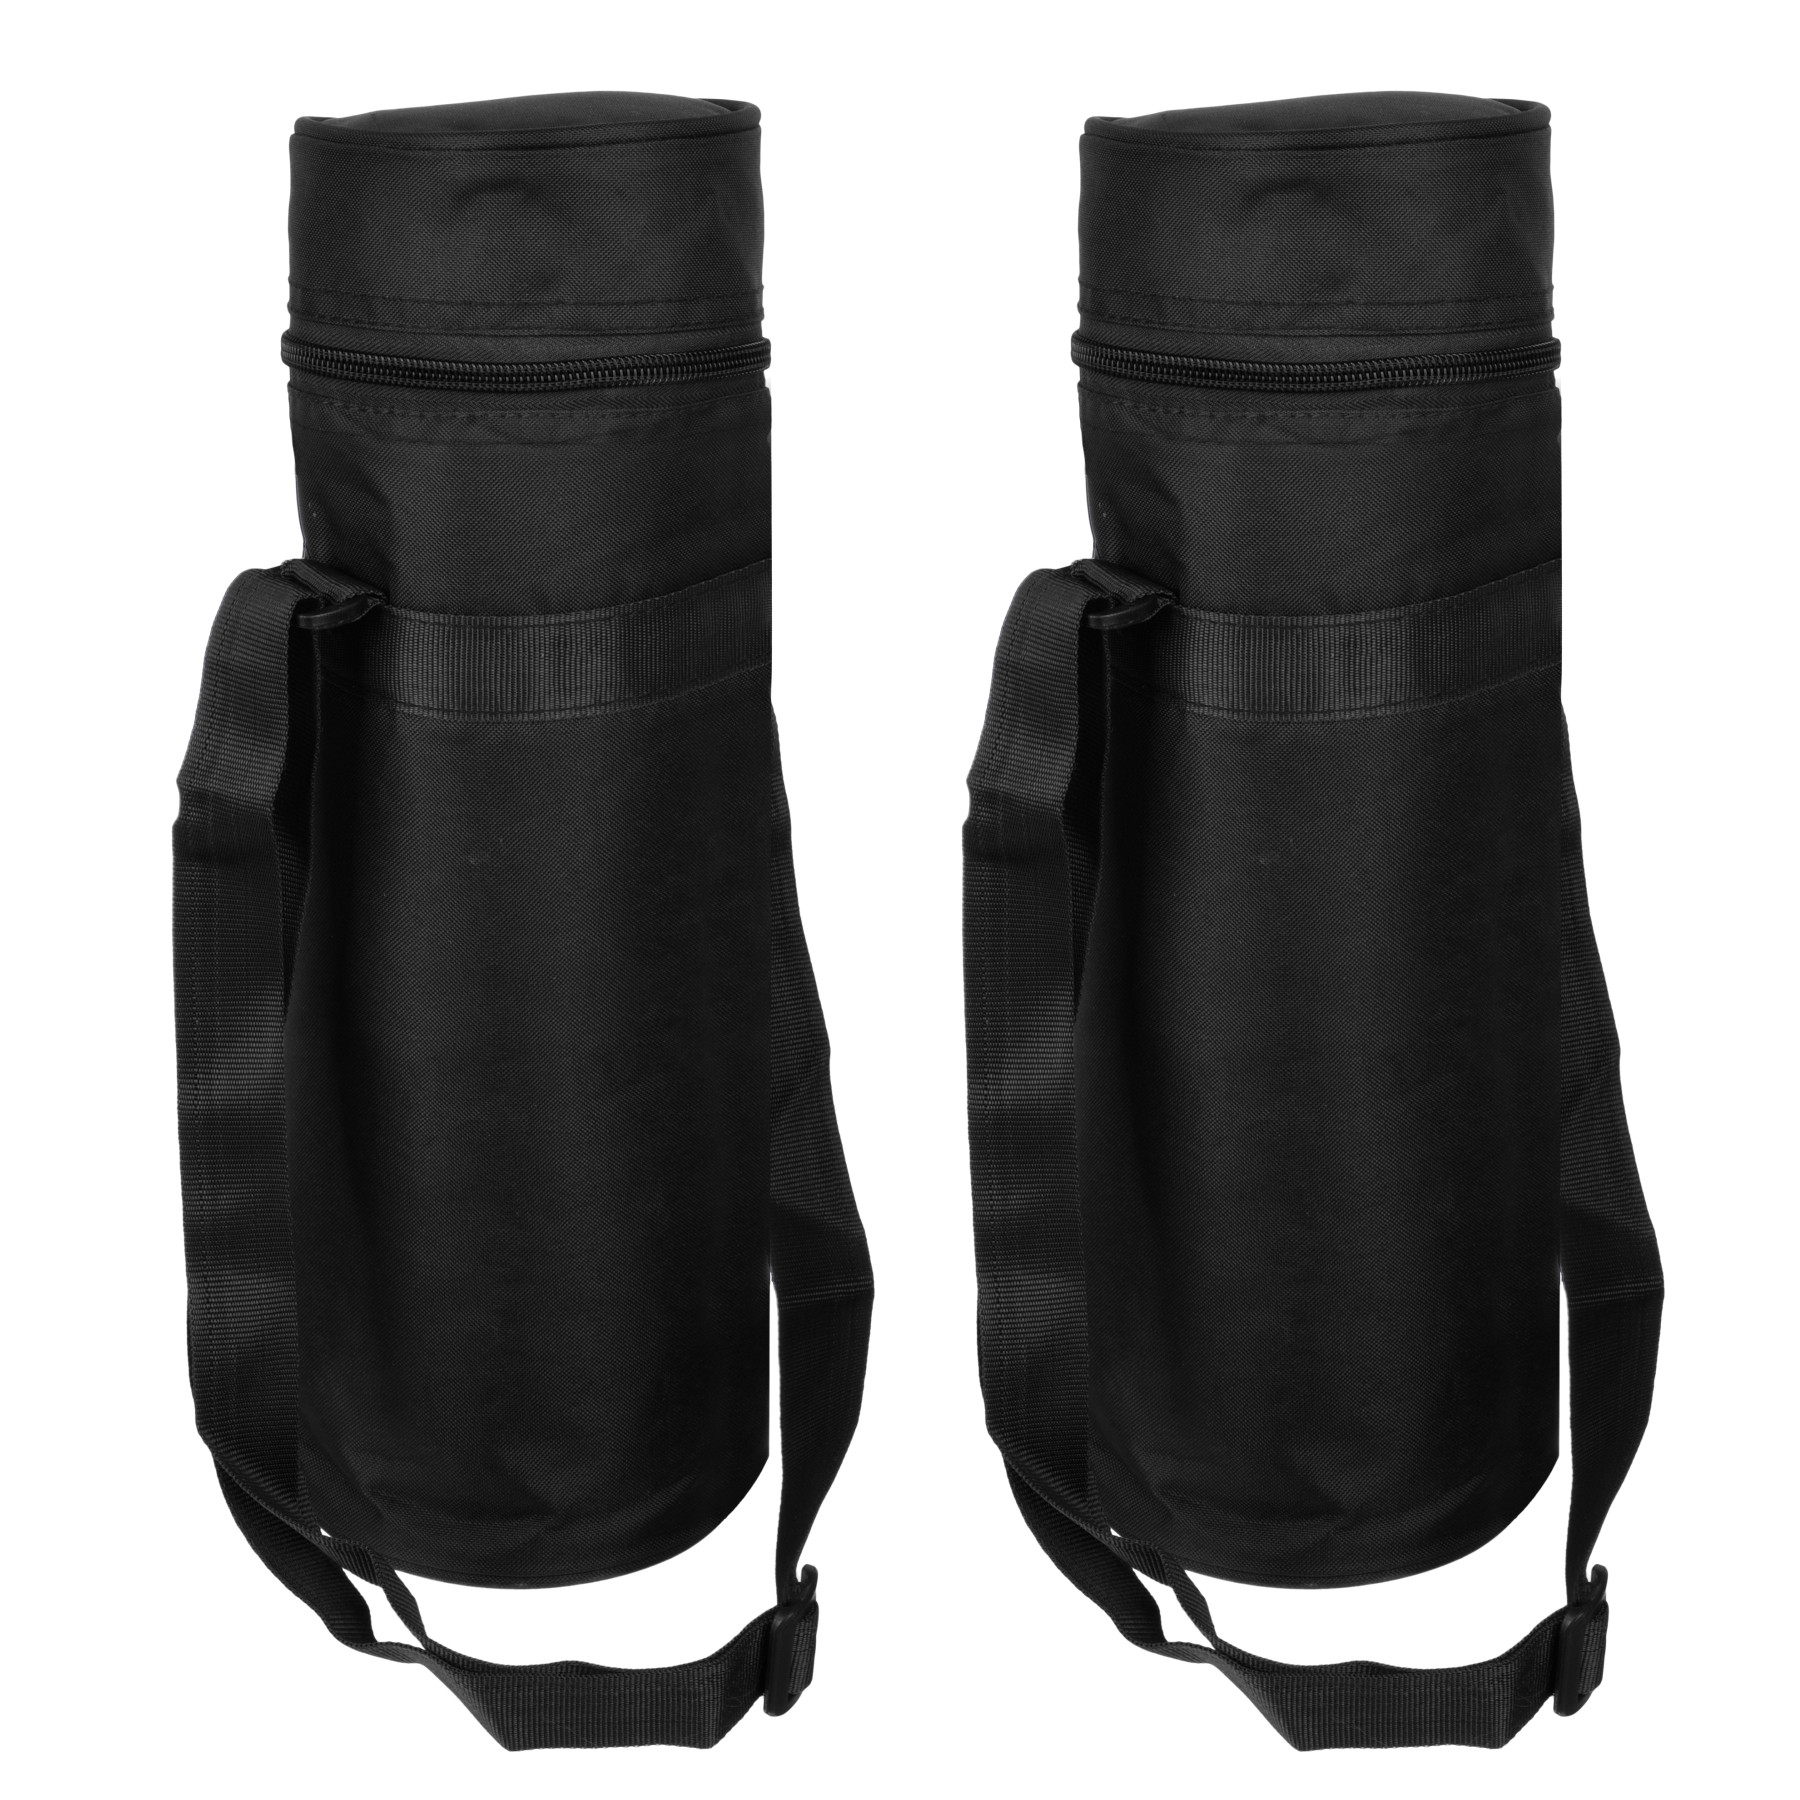 Kuber Industries Bottle Bag | Travel Water Bottle Bag | Bottle Protector Bag | Water Bottle Carrier Bag | Bottle Carry Bag | Adjustable Strap & Zipper Closure | 1 LTR | Black